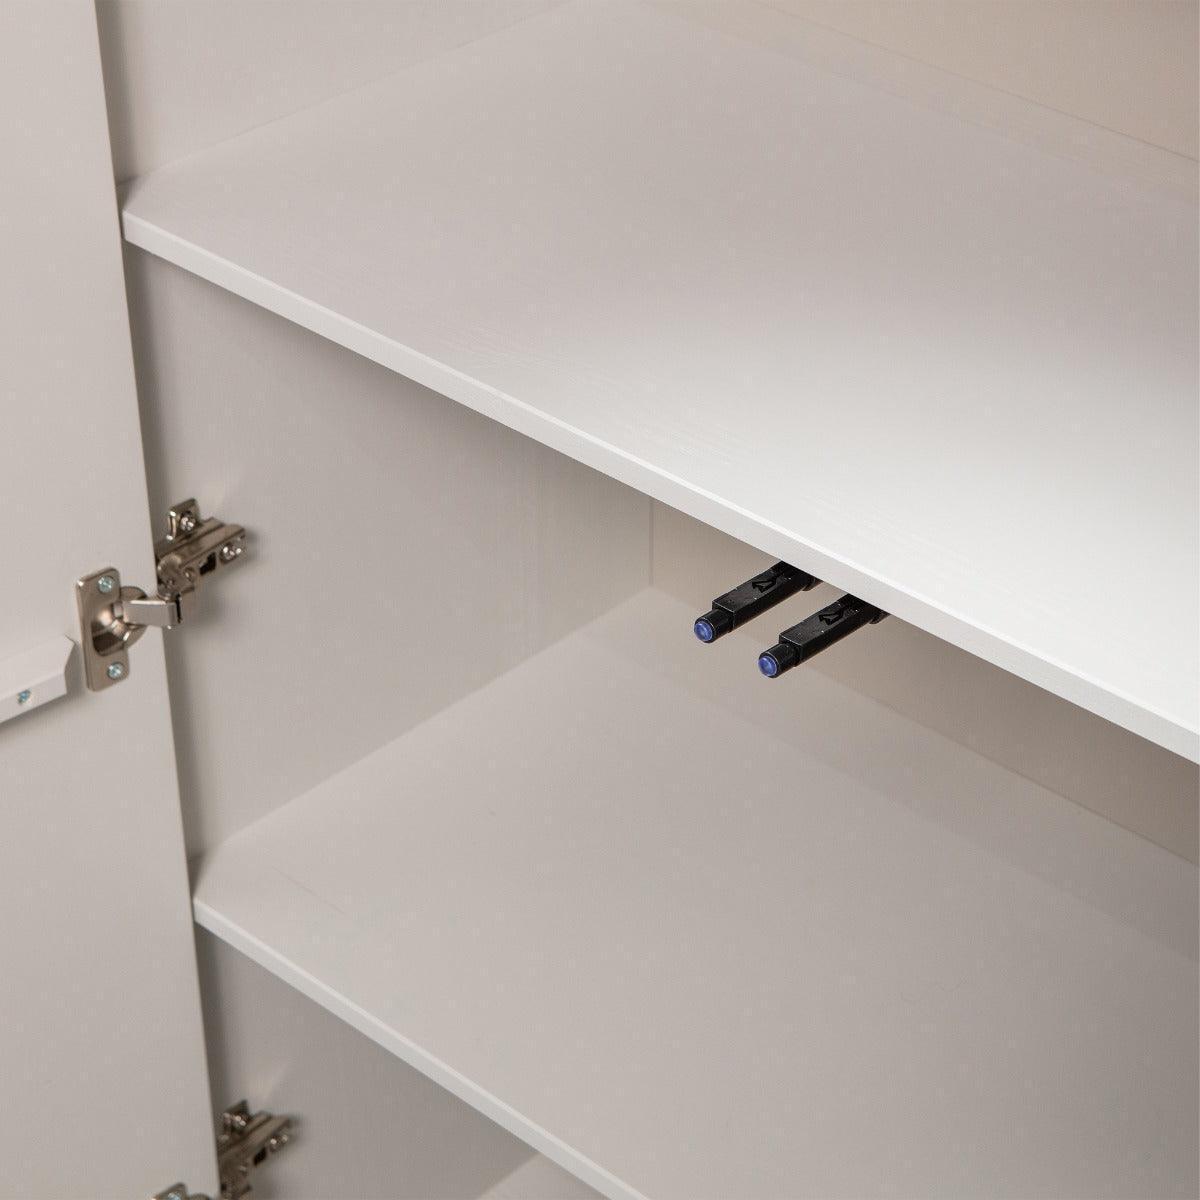 Cadiz Mist Pine Wood Storage Cabinet - WOO .Design